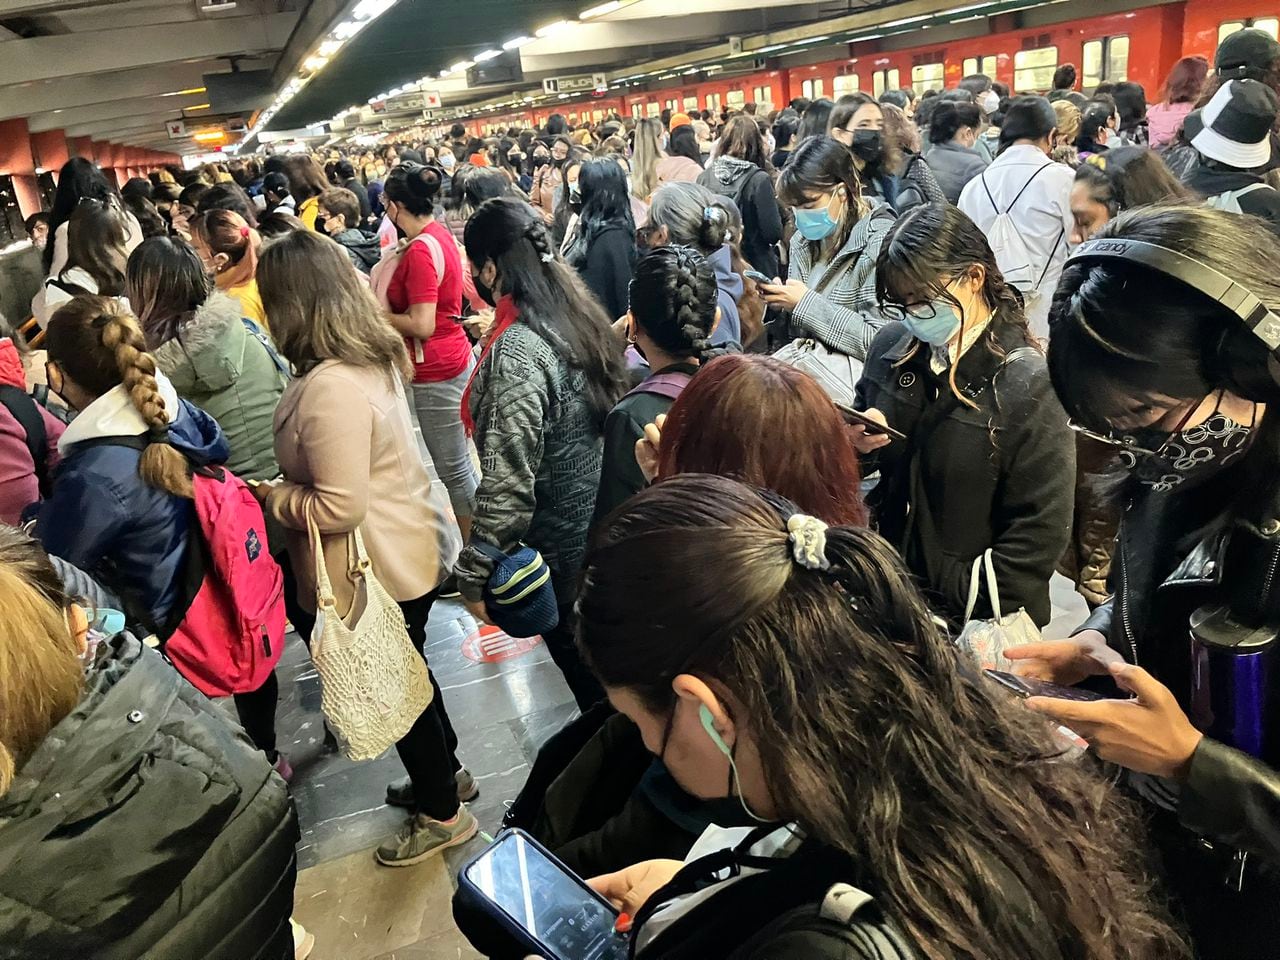 La periodista @nicteGF en su cuenta de Twitter, publicó una foto de la congestión que se registra en una de las estaciones del metro de Ciudad de México.